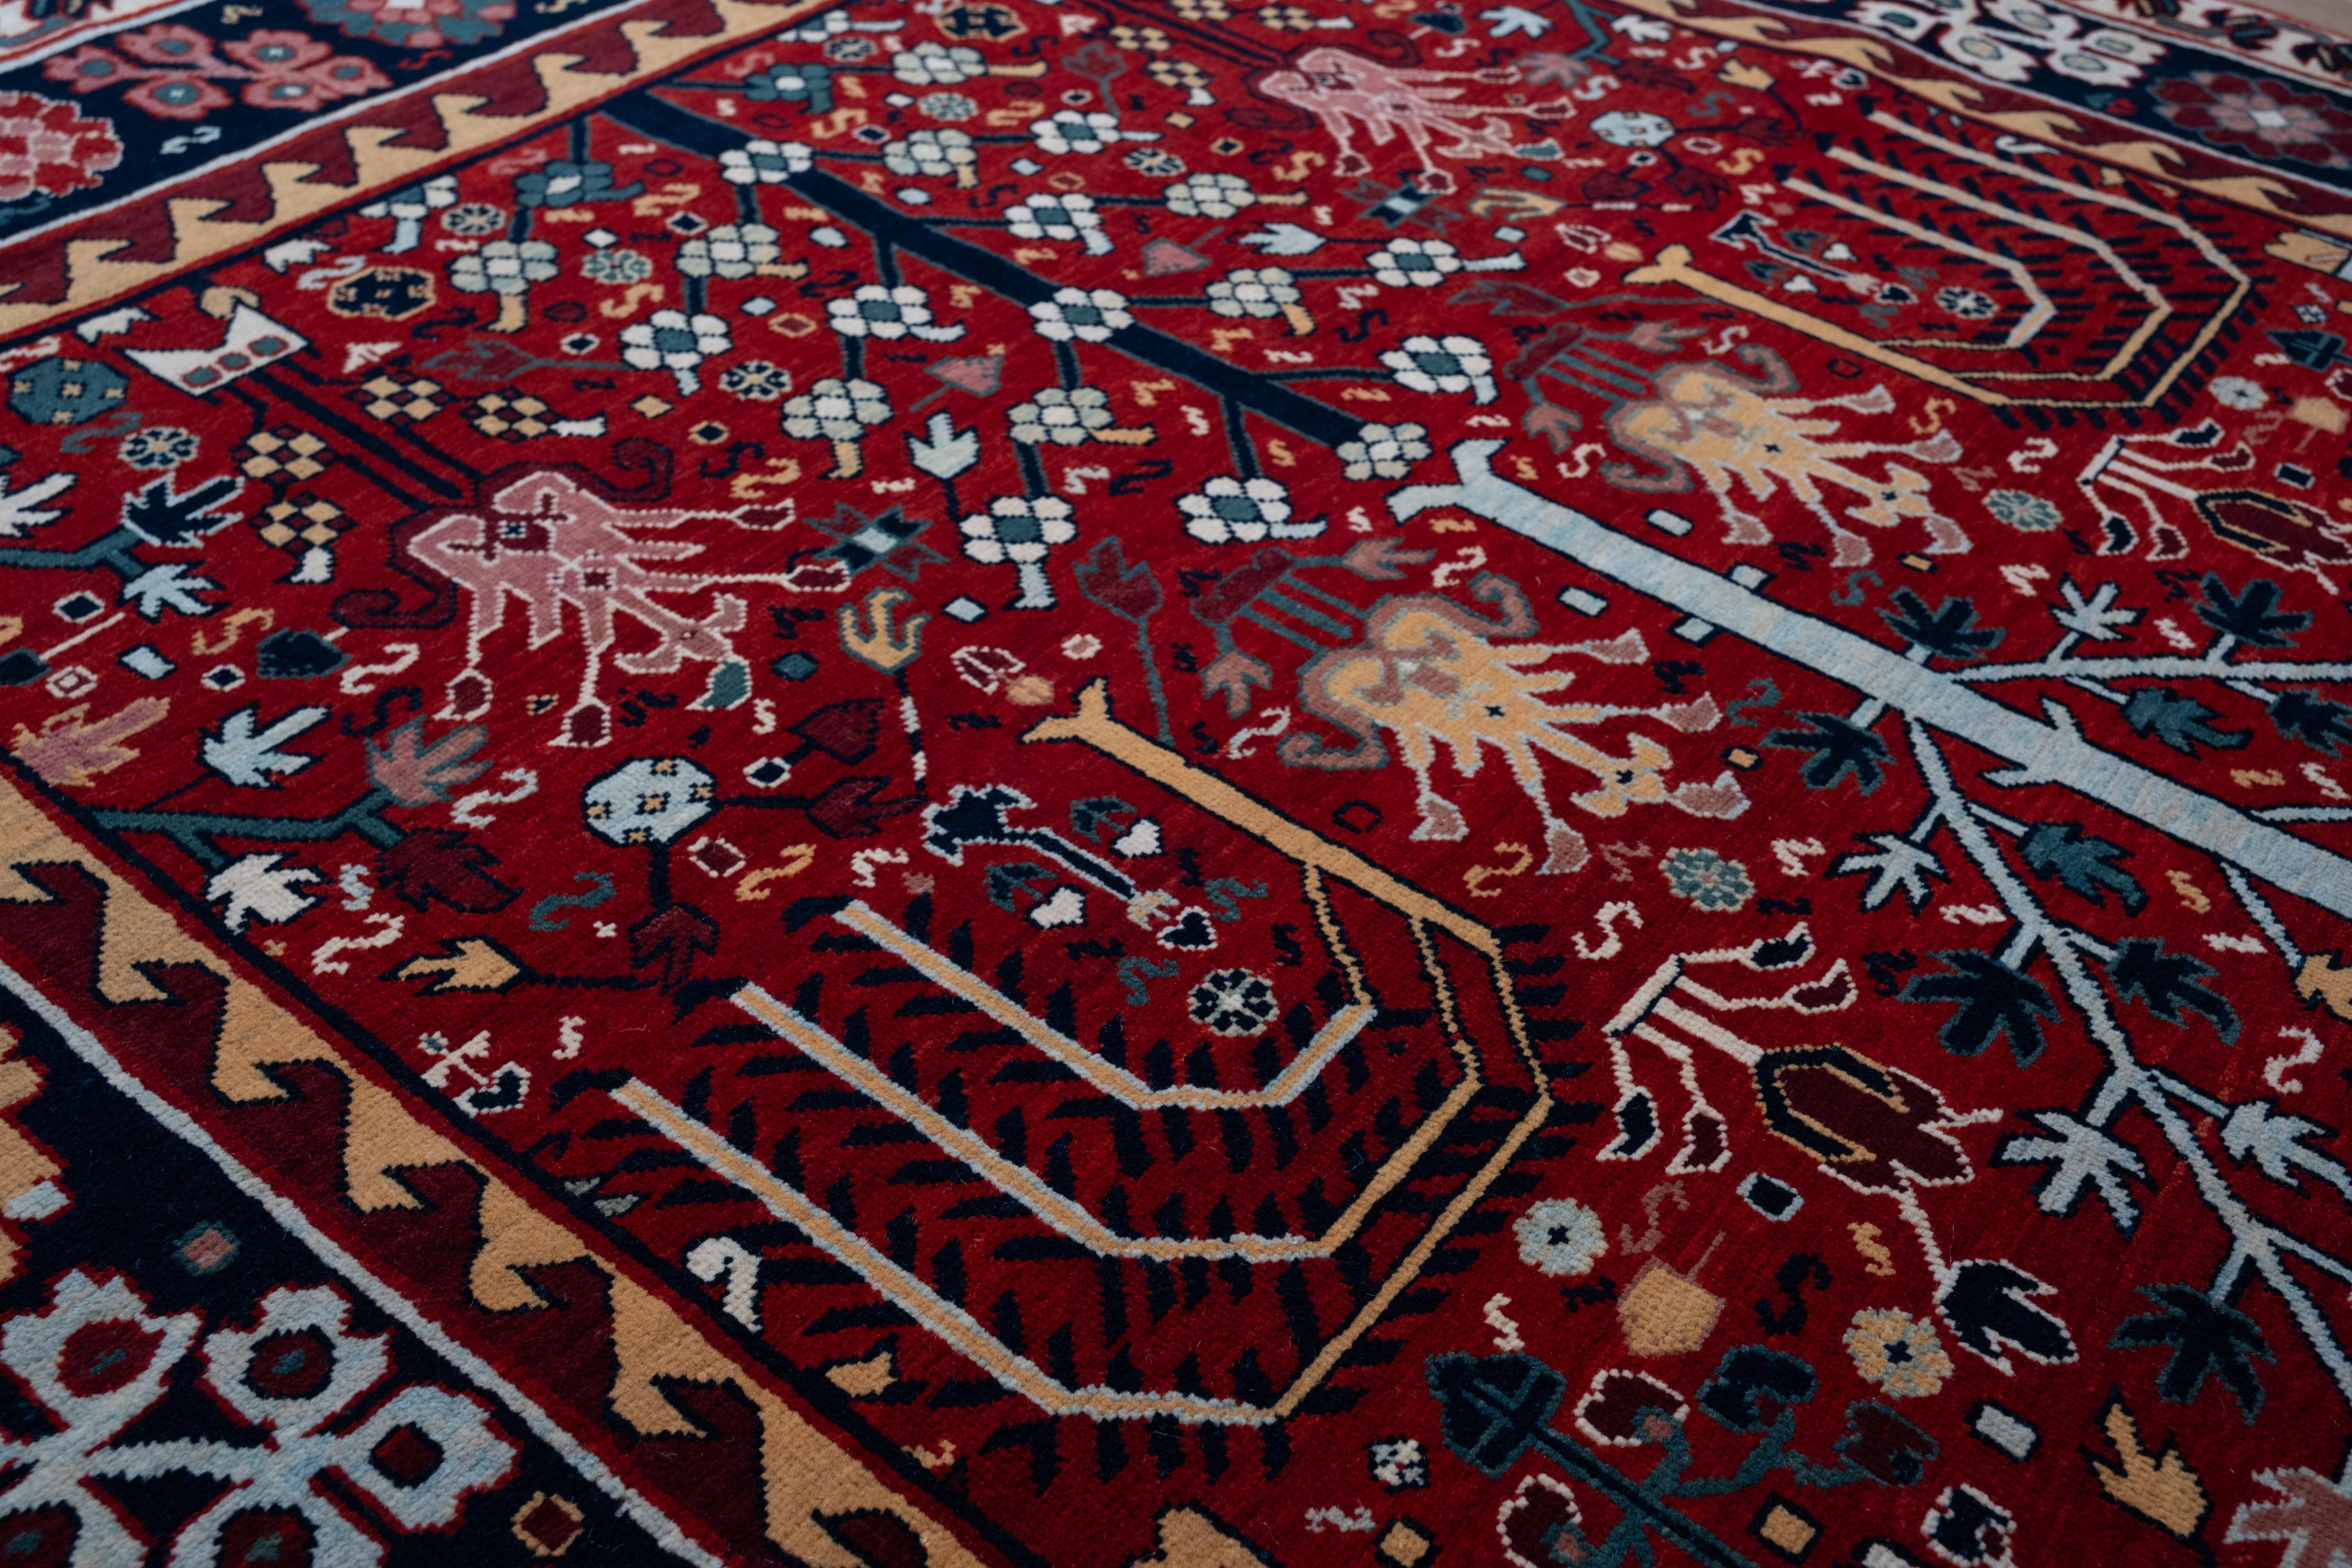 Die Quelle des Teppichs stammt aus dem Buch Antique Rugs of Kurdistan A Historical Legacy of Woven Art, James D. Burns, 2002 nr.45. Dies ist ein beliebtes Muster der Kurden, genannt Bid Majnum (oder Bid Majnun, Trauerweide), ein Teppich aus Sa'uj